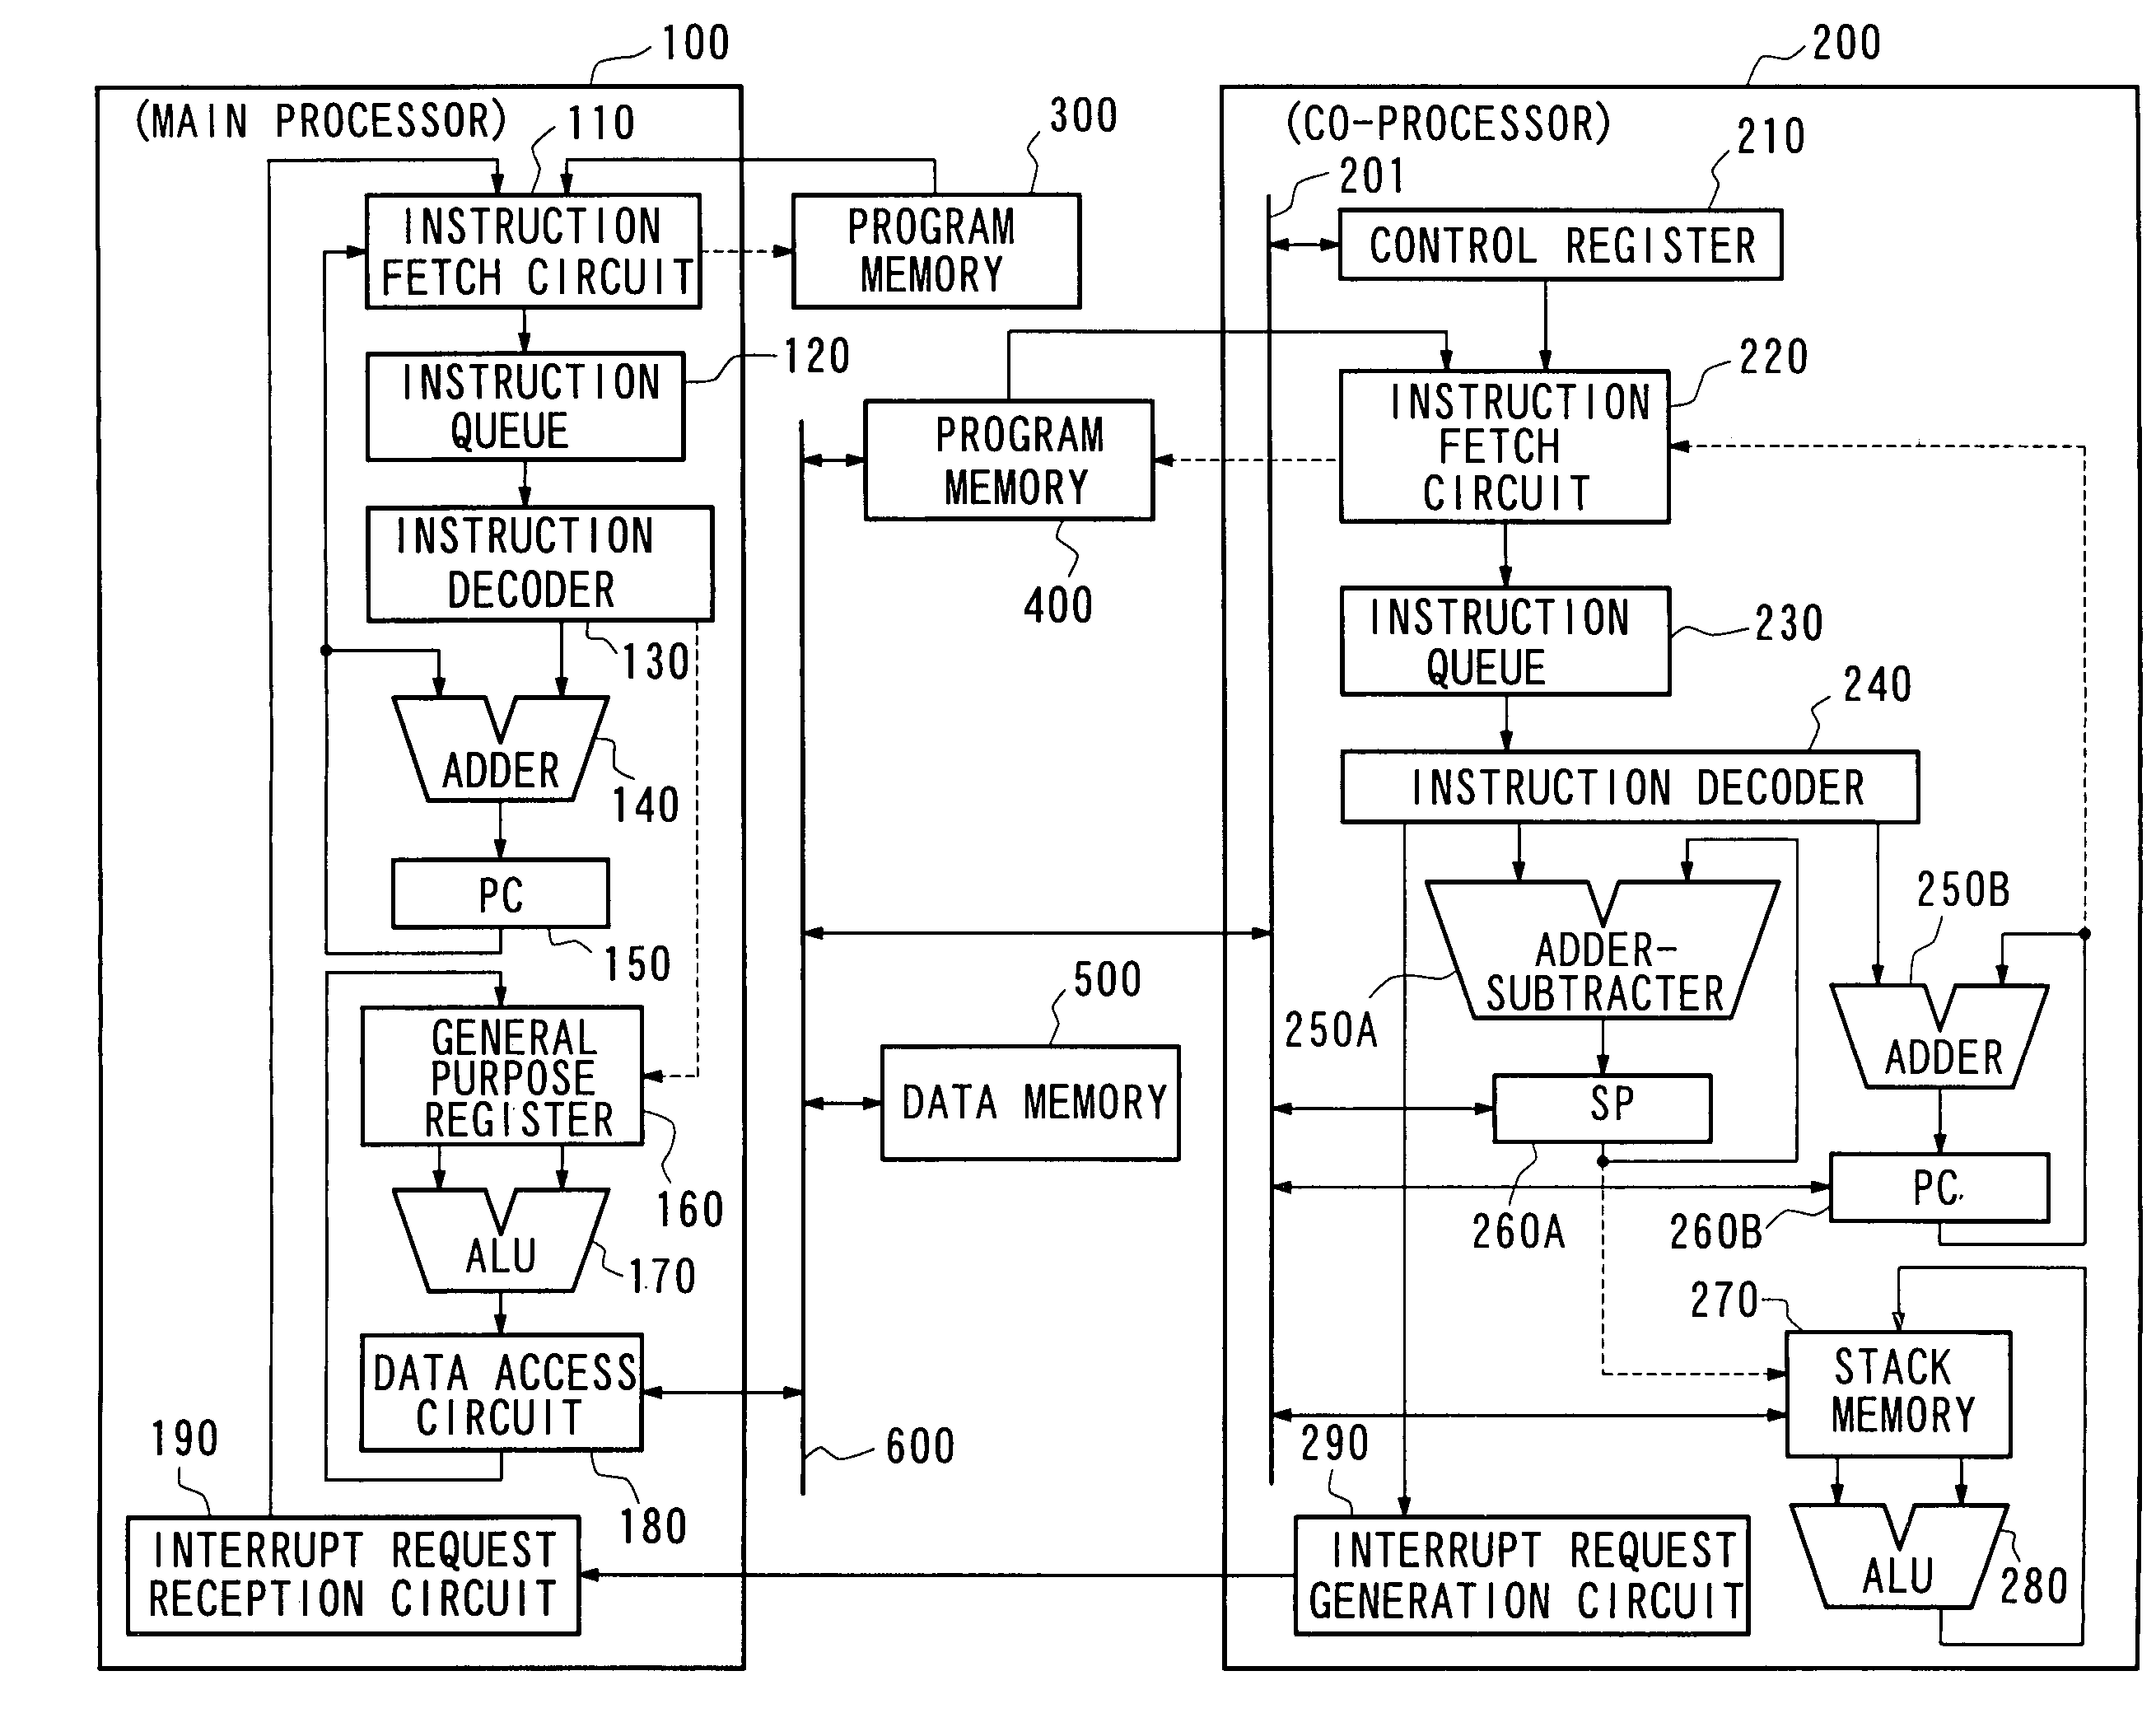 Microprocessor having main processor and co-processor